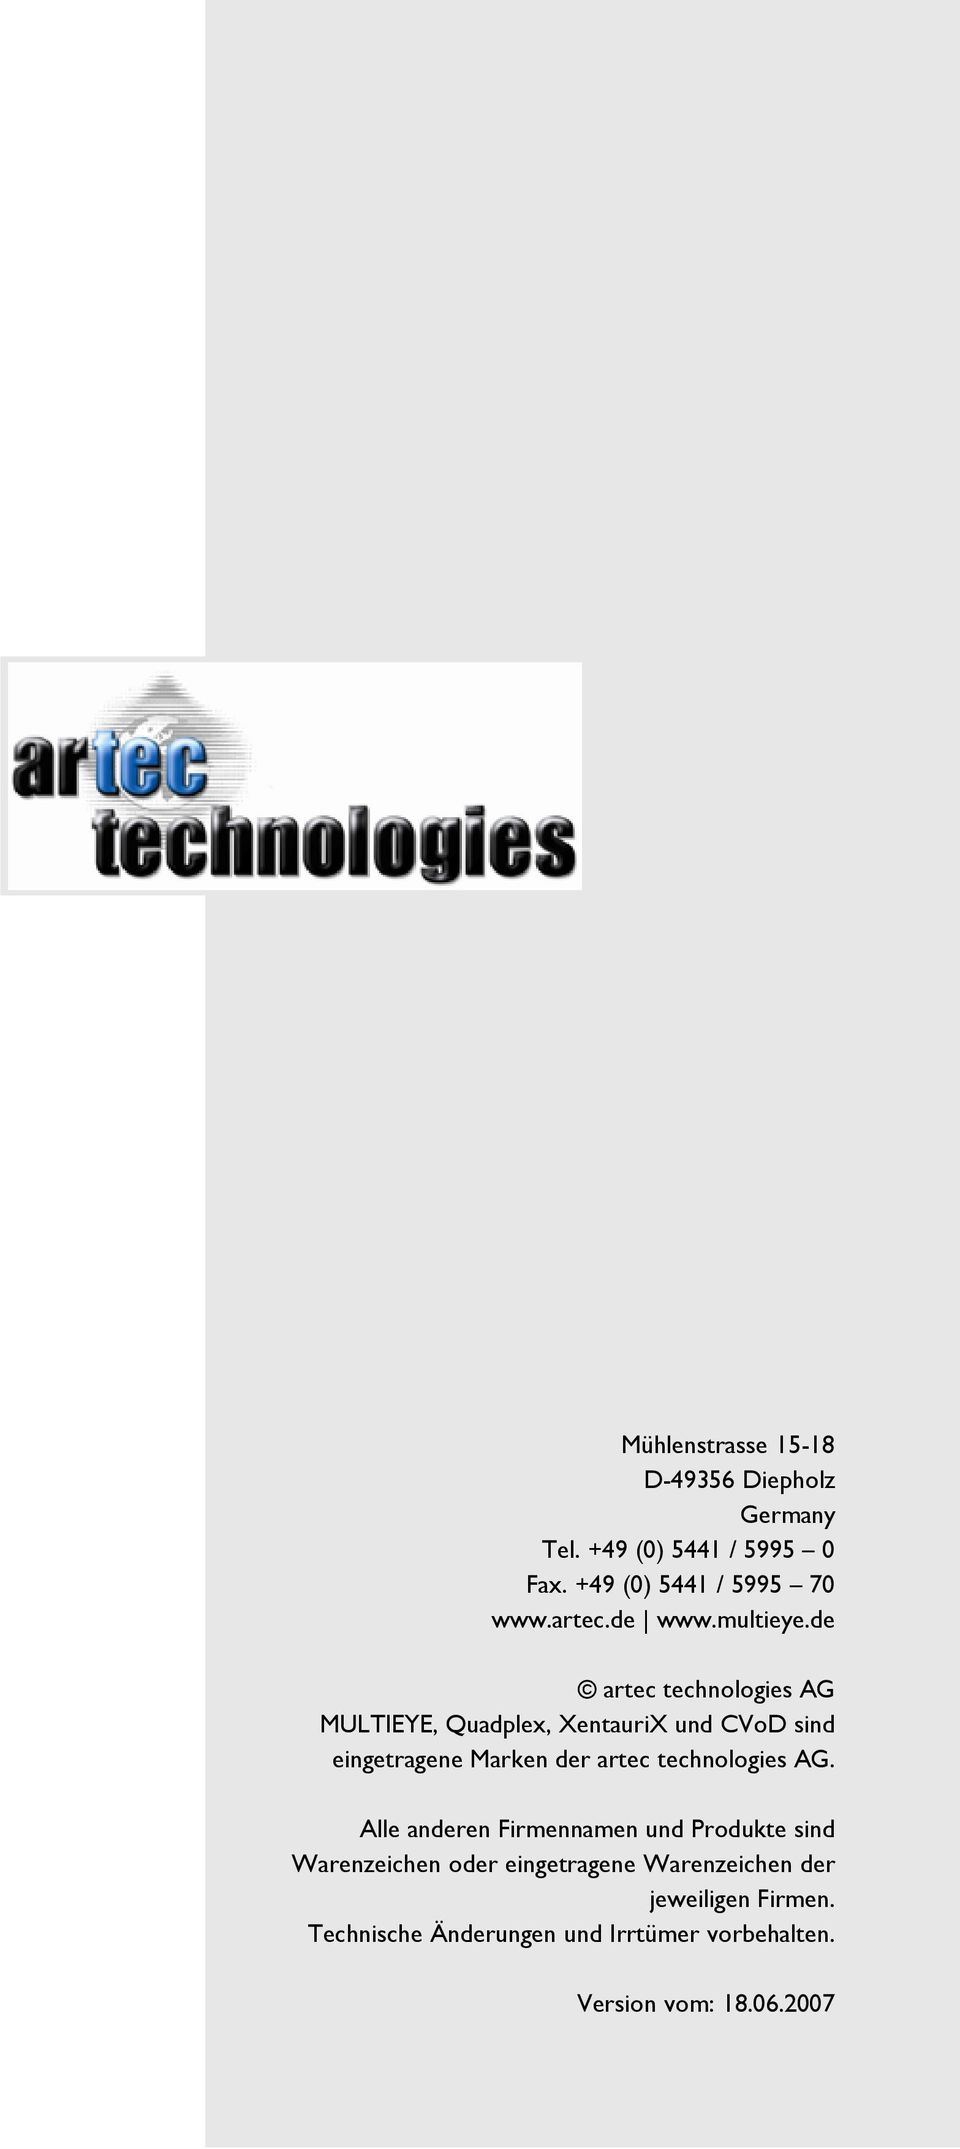 de artec technologies AG MULTIEYE, Quadplex, XentauriX und CVoD sind eingetragene Marken der artec